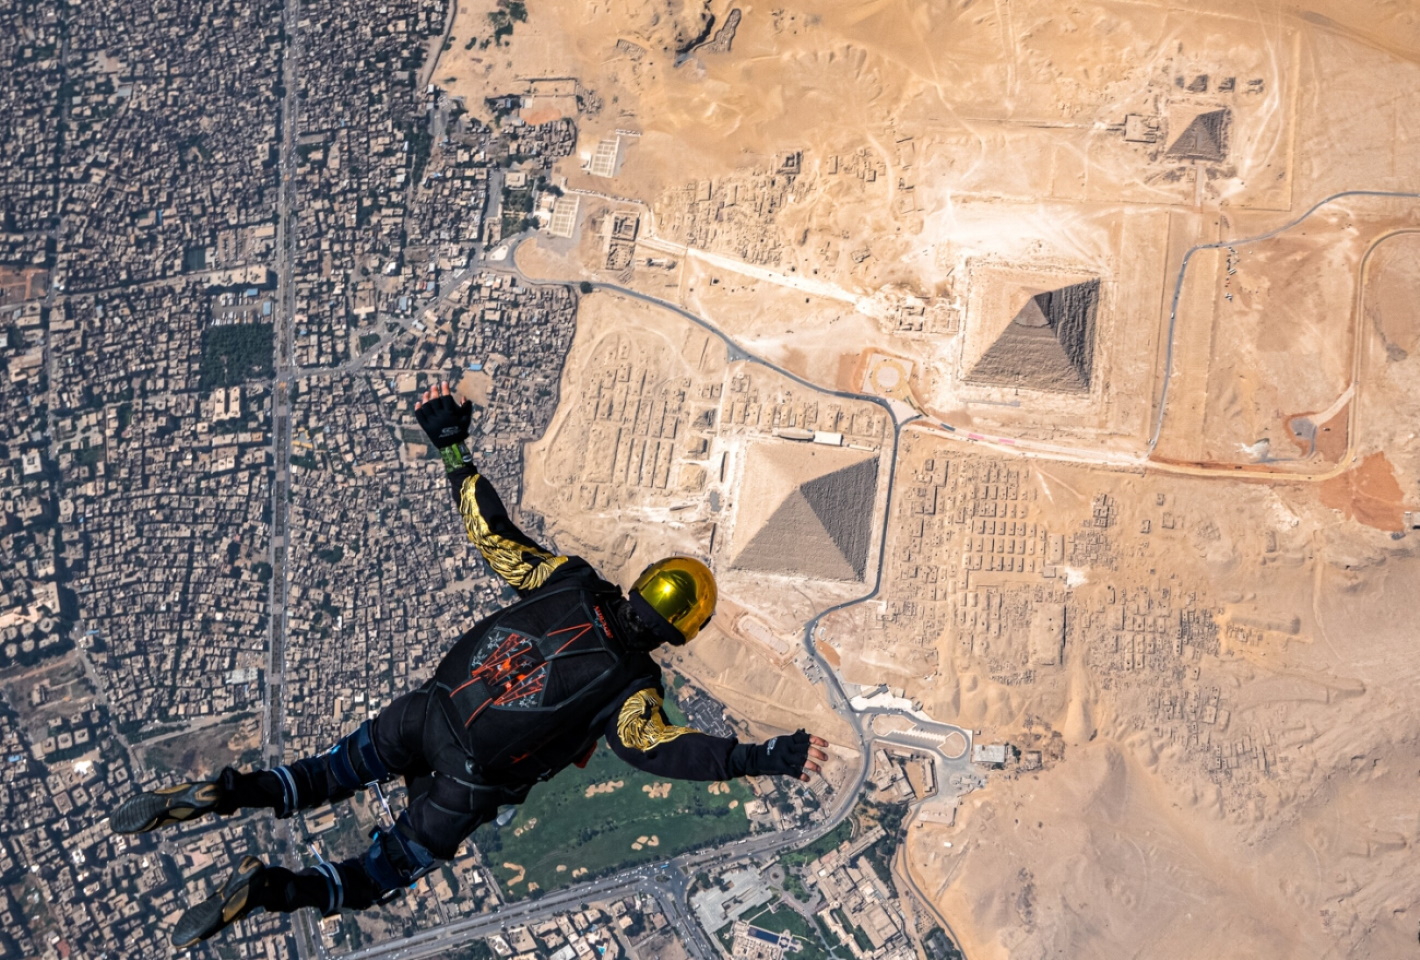 «Пирамиды». Замечательная работа в категории "Спорт в действии". Каир, Египет. Фото: © Juan Mayer